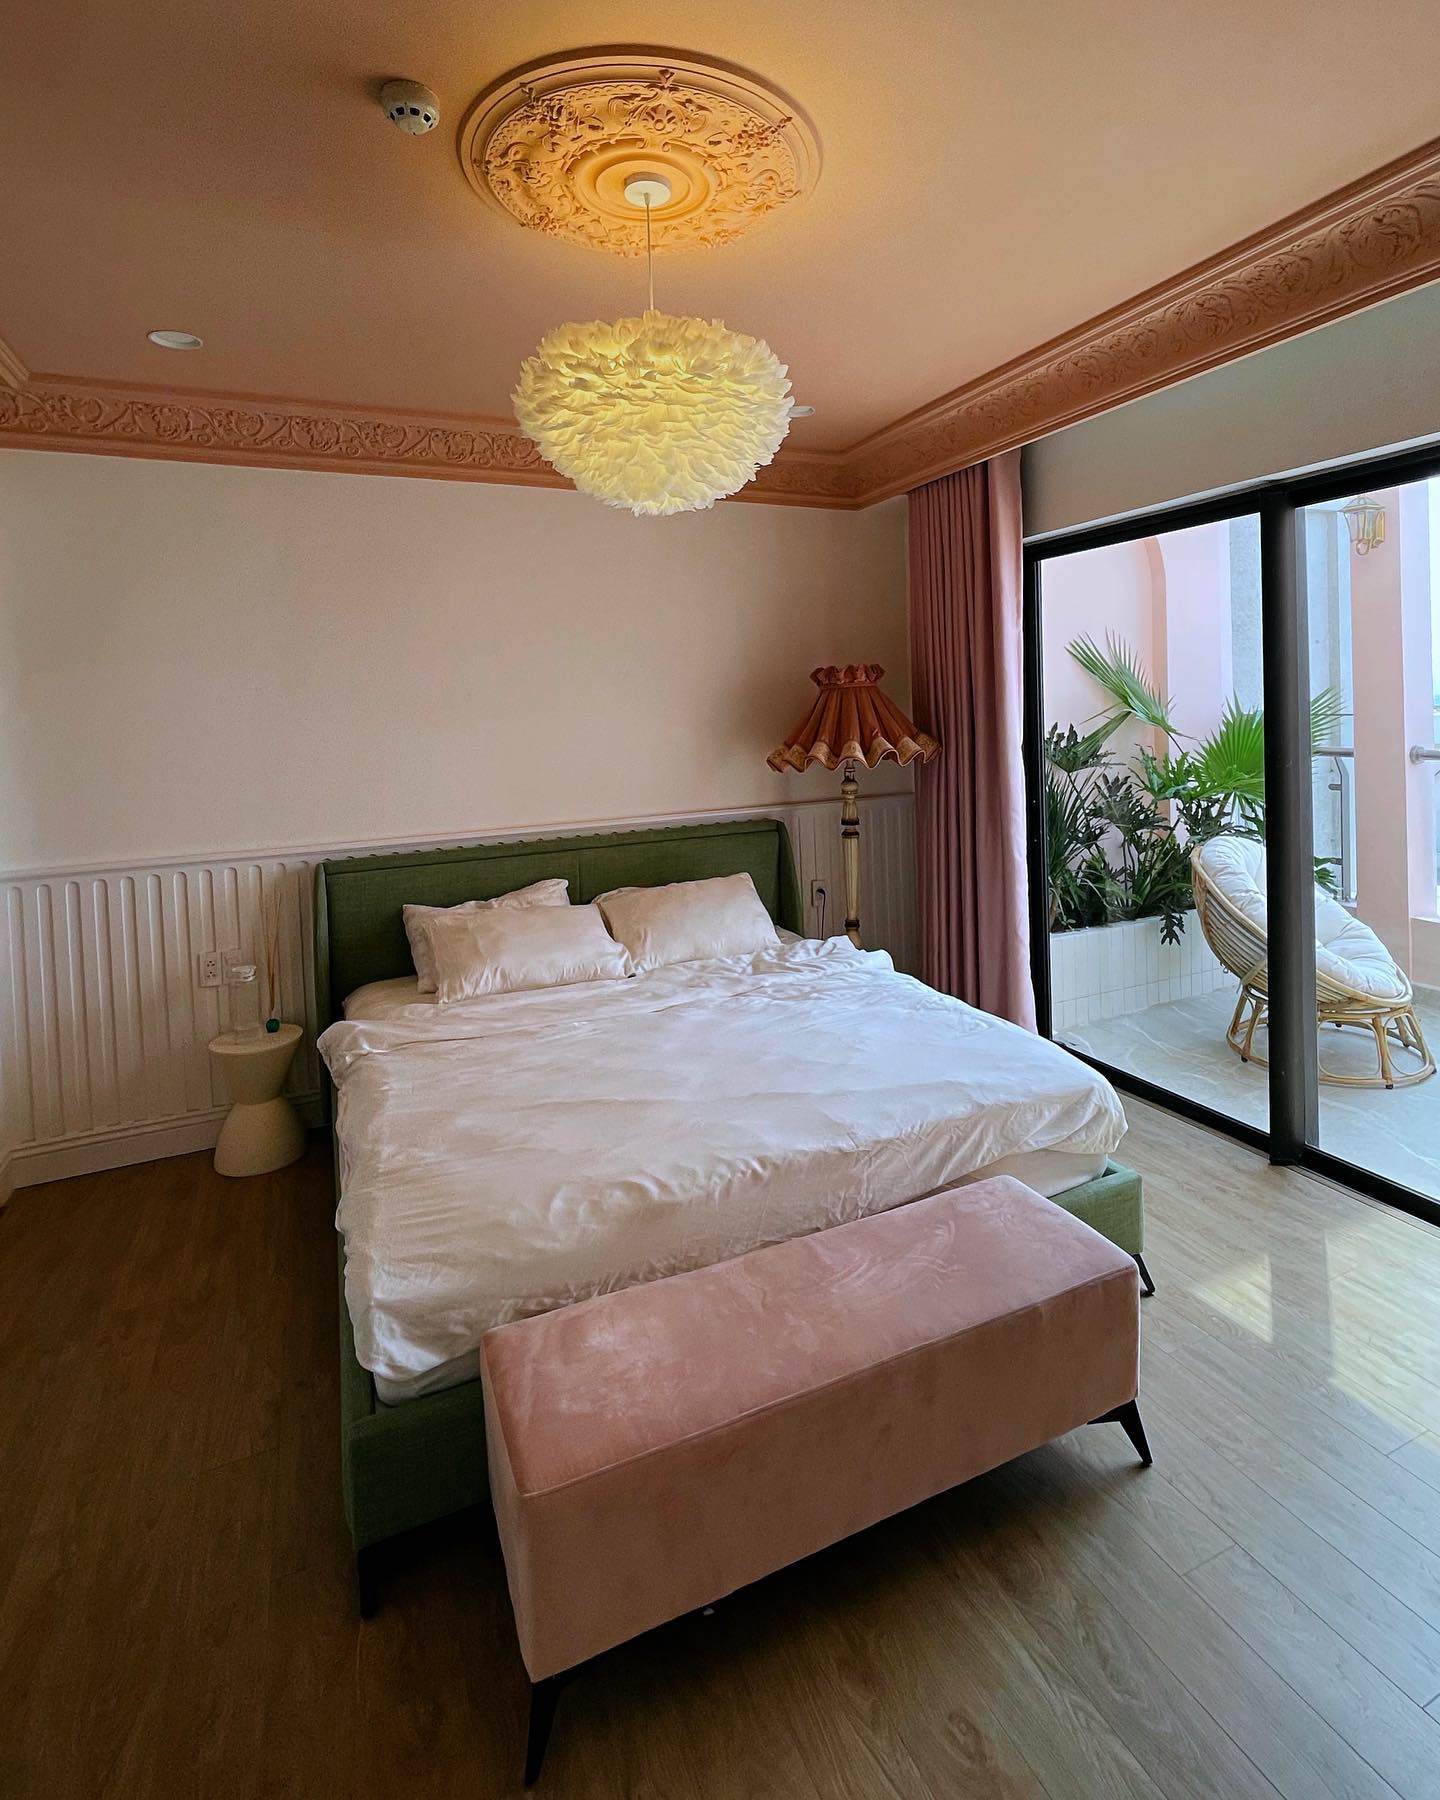 Phòng ngủ của Quỳnh Anh rất nữ tính, lãng mạn nhưng không kém phần phóng khoáng.